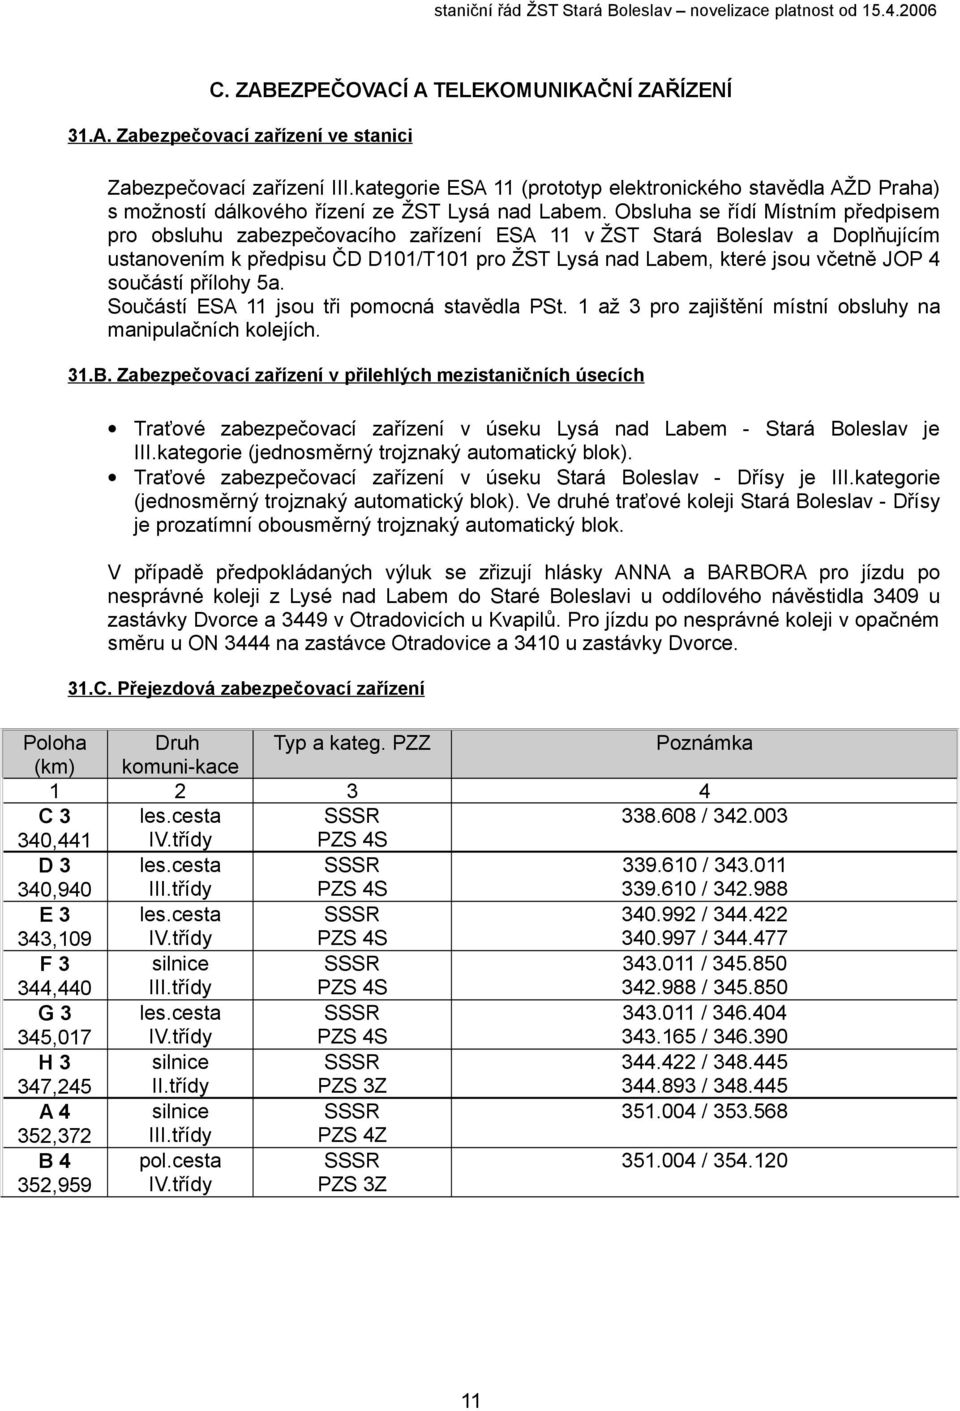 Obsluha se řídí Místním předpisem pro obsluhu zabezpečovacího zařízení ESA 11 v ŽST Stará Boleslav a Doplňujícím ustanovením k předpisu ČD D101/T101 pro ŽST Lysá nad Labem, které jsou včetně JOP 4